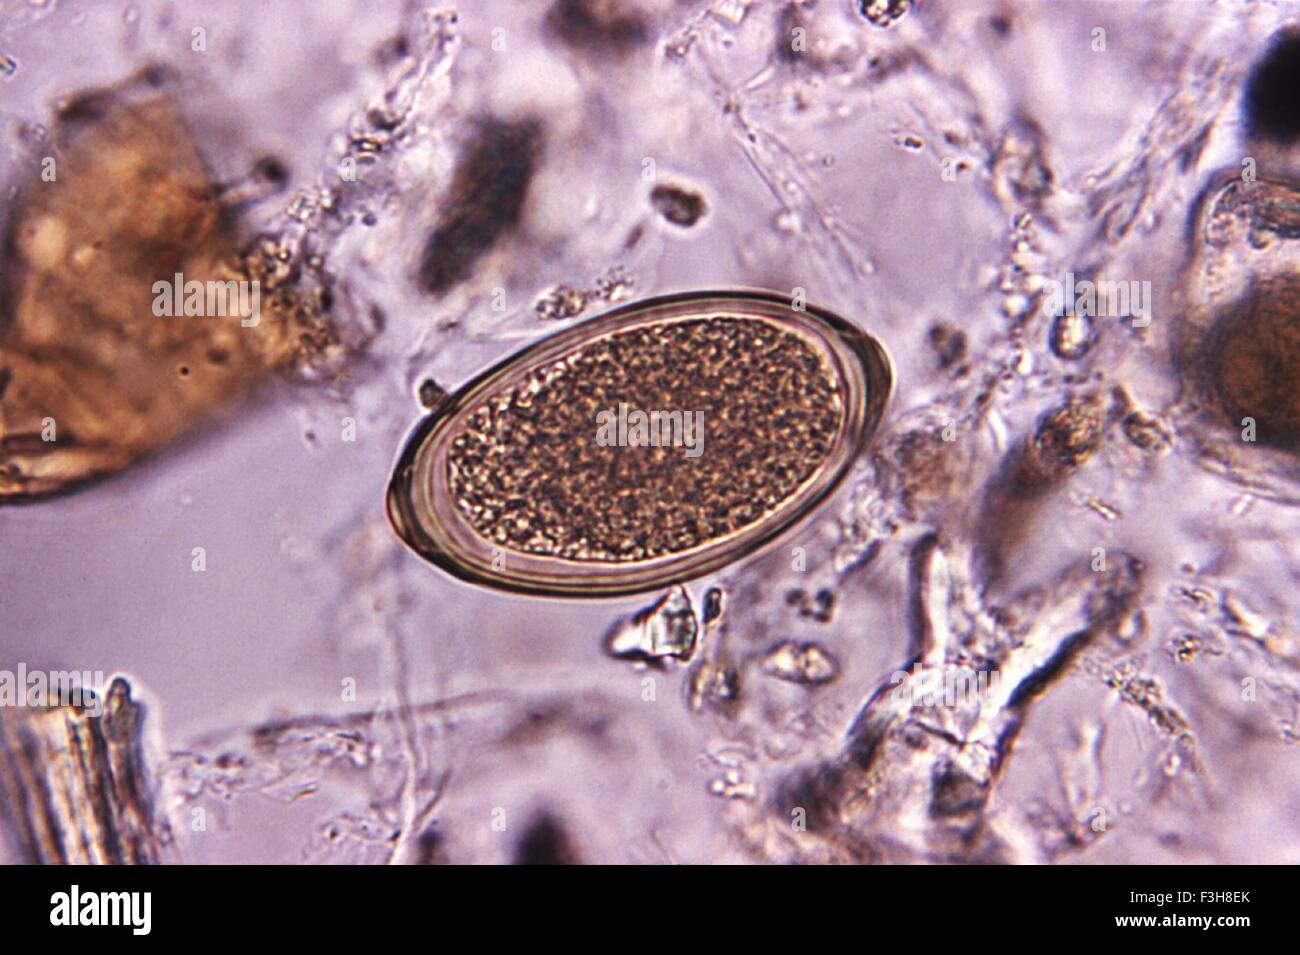 Microfotografía de un Huevo de Trichuris vulpis nematodo magnificados 500x Foto de stock